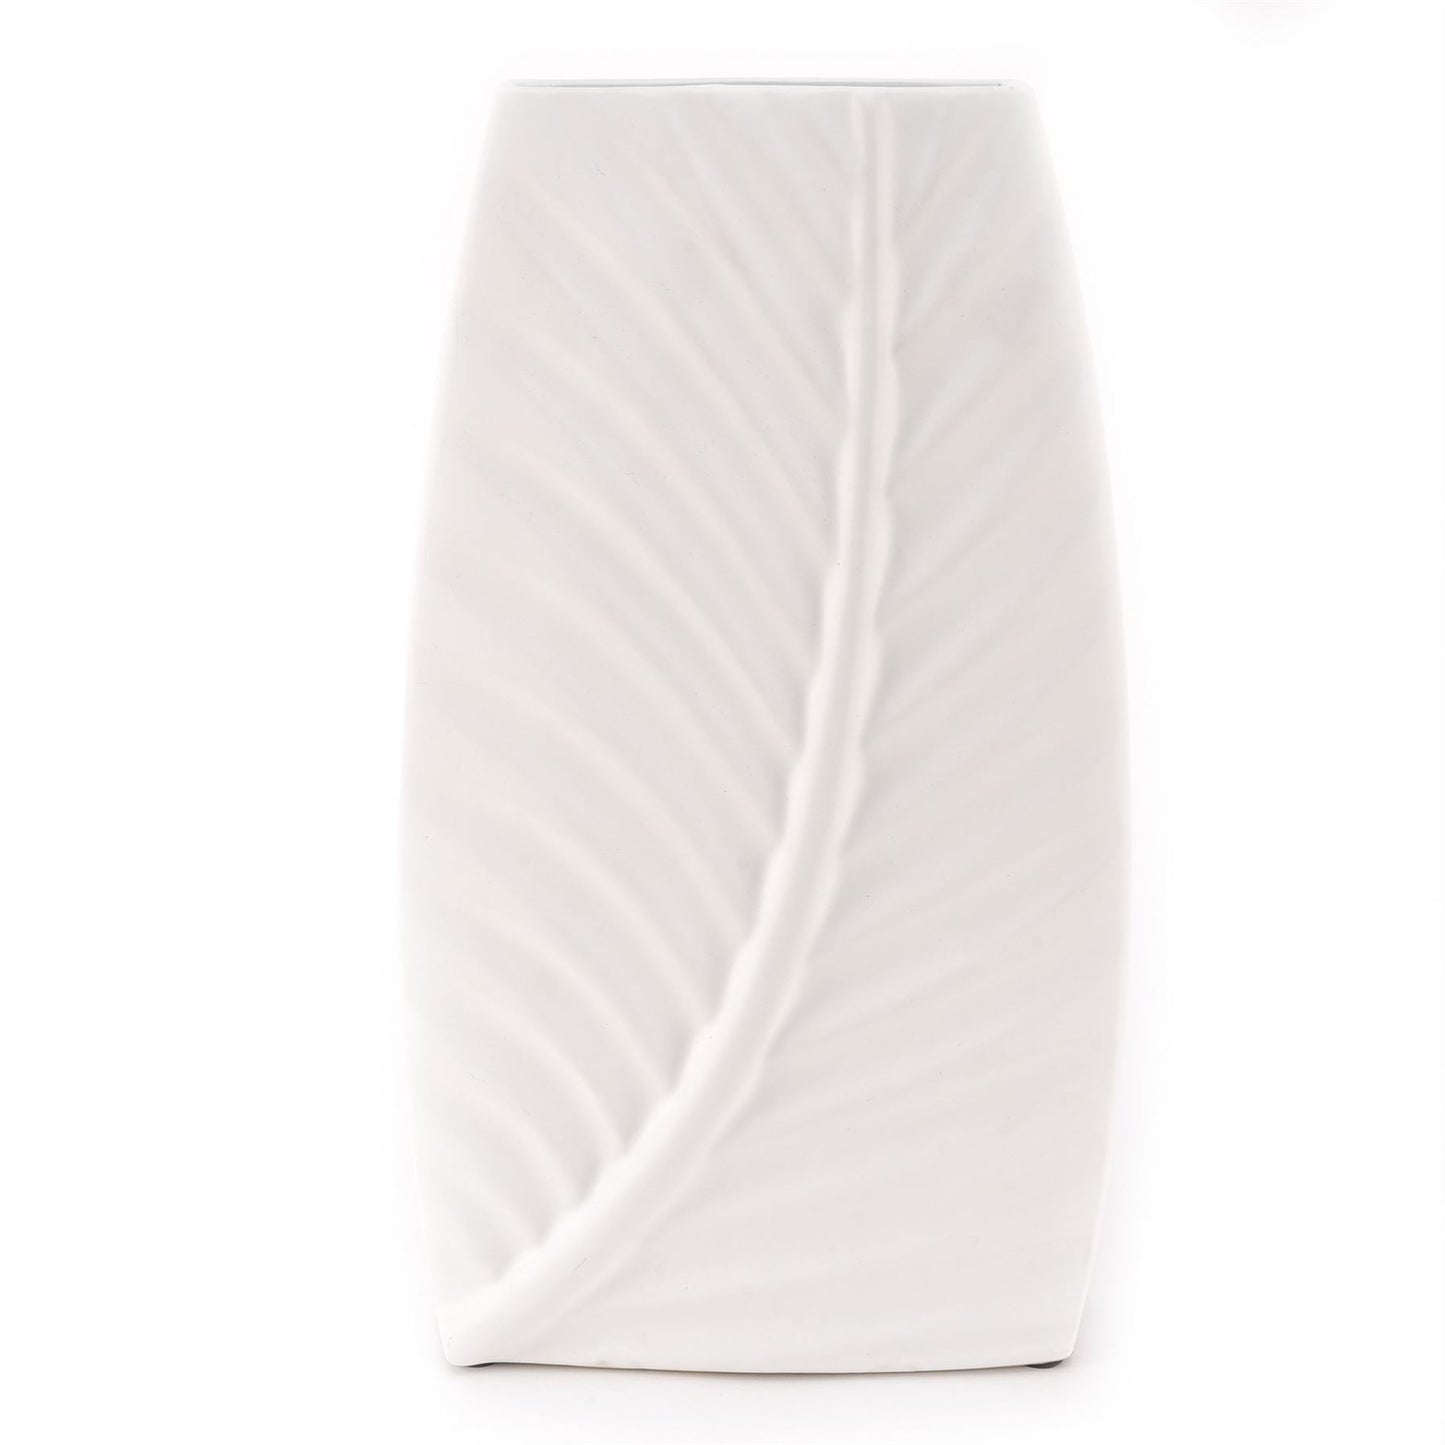 Hestia Matte White Ceramic Leaf Vase 36cm